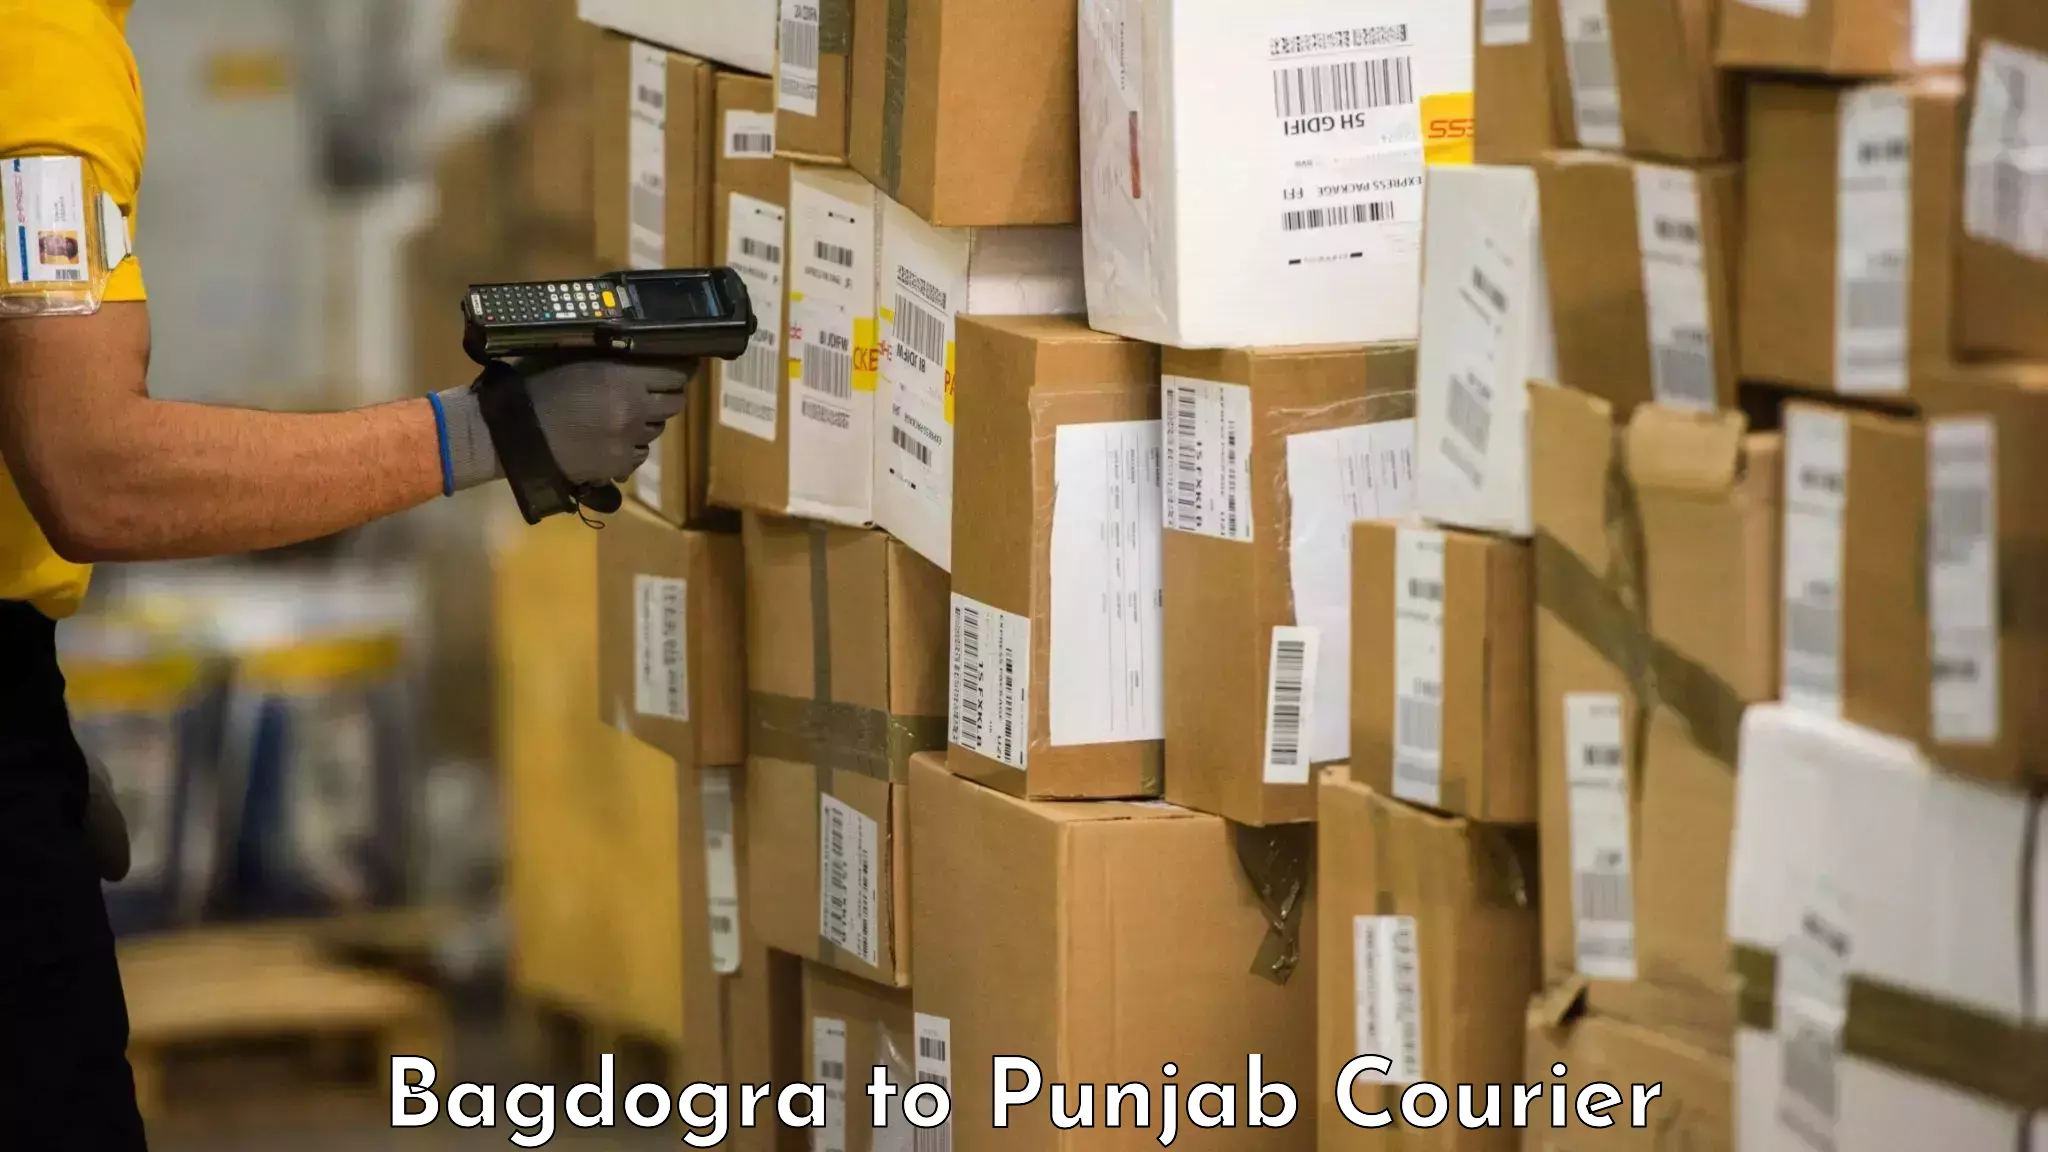 Quick baggage pickup Bagdogra to Mandi Gobindgarh